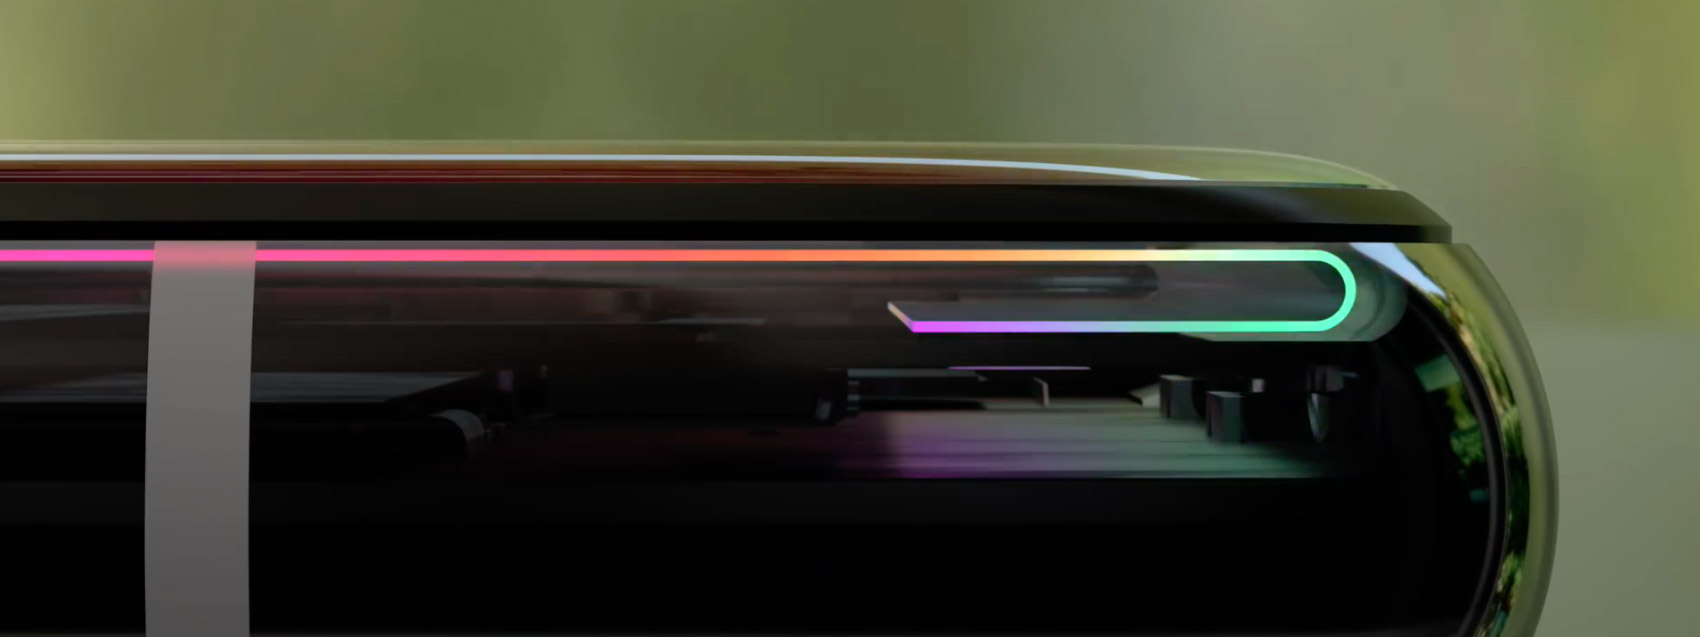 Apple đã làm gì để chỉnh lại màu của OLED và vì sao màn hình iPhone X gập 2 bên